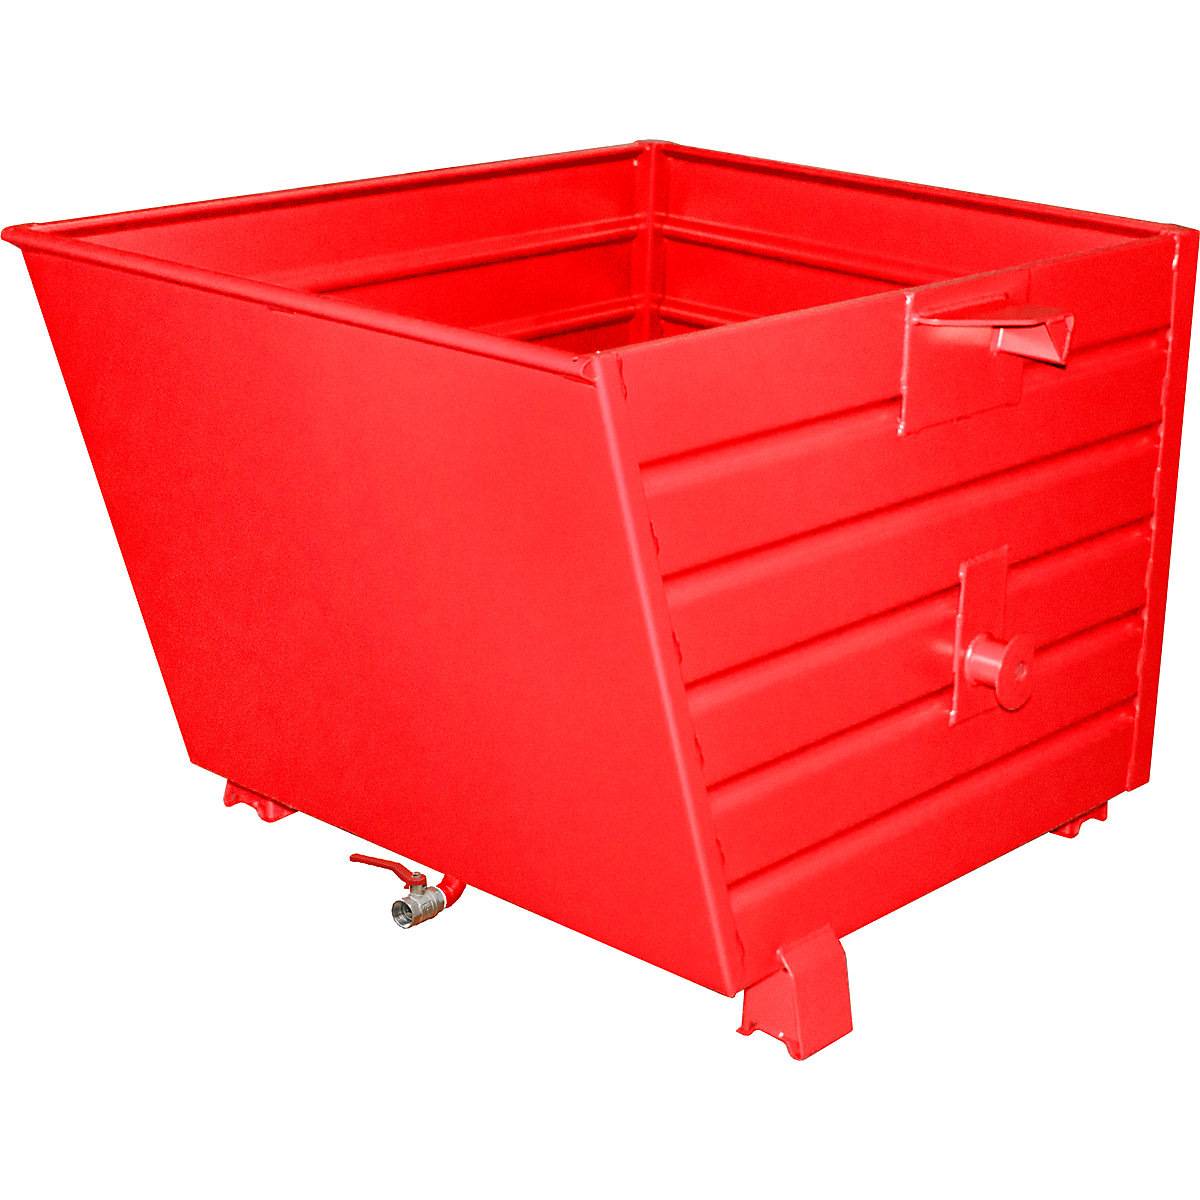 EUROKRAFTpro – Container basculant și stivuibil pentru șpan BSL, volum 0,9 m³, roșu aprins